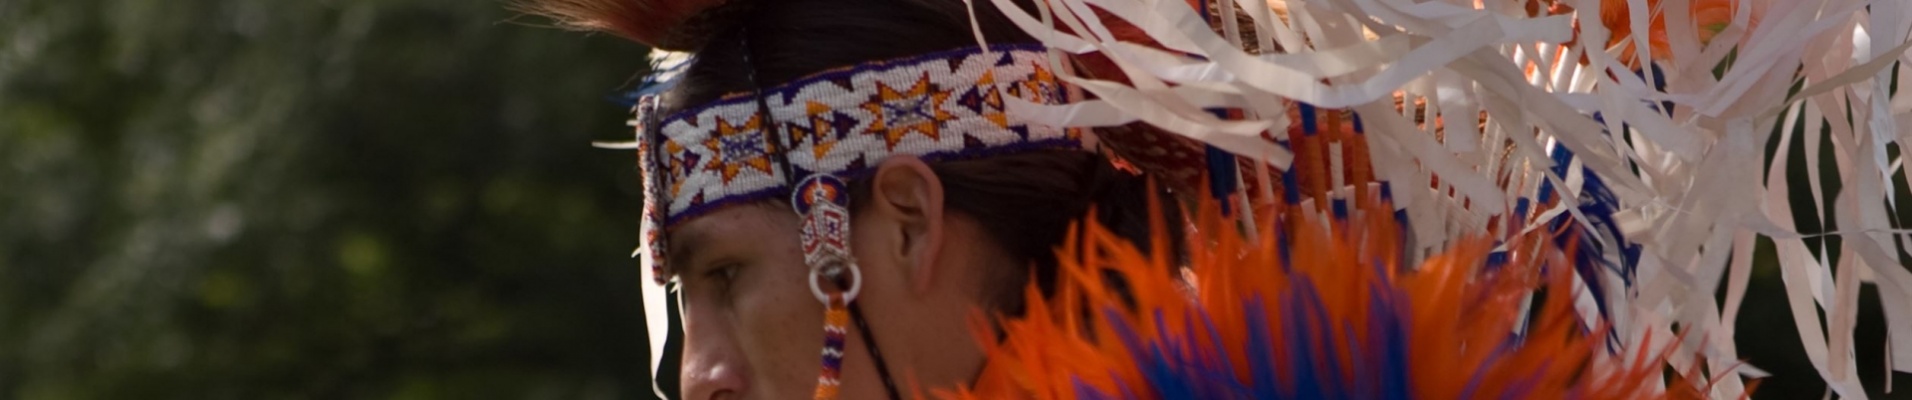 ameridien-en-tenue-traditionnel-musee-ontario-canada